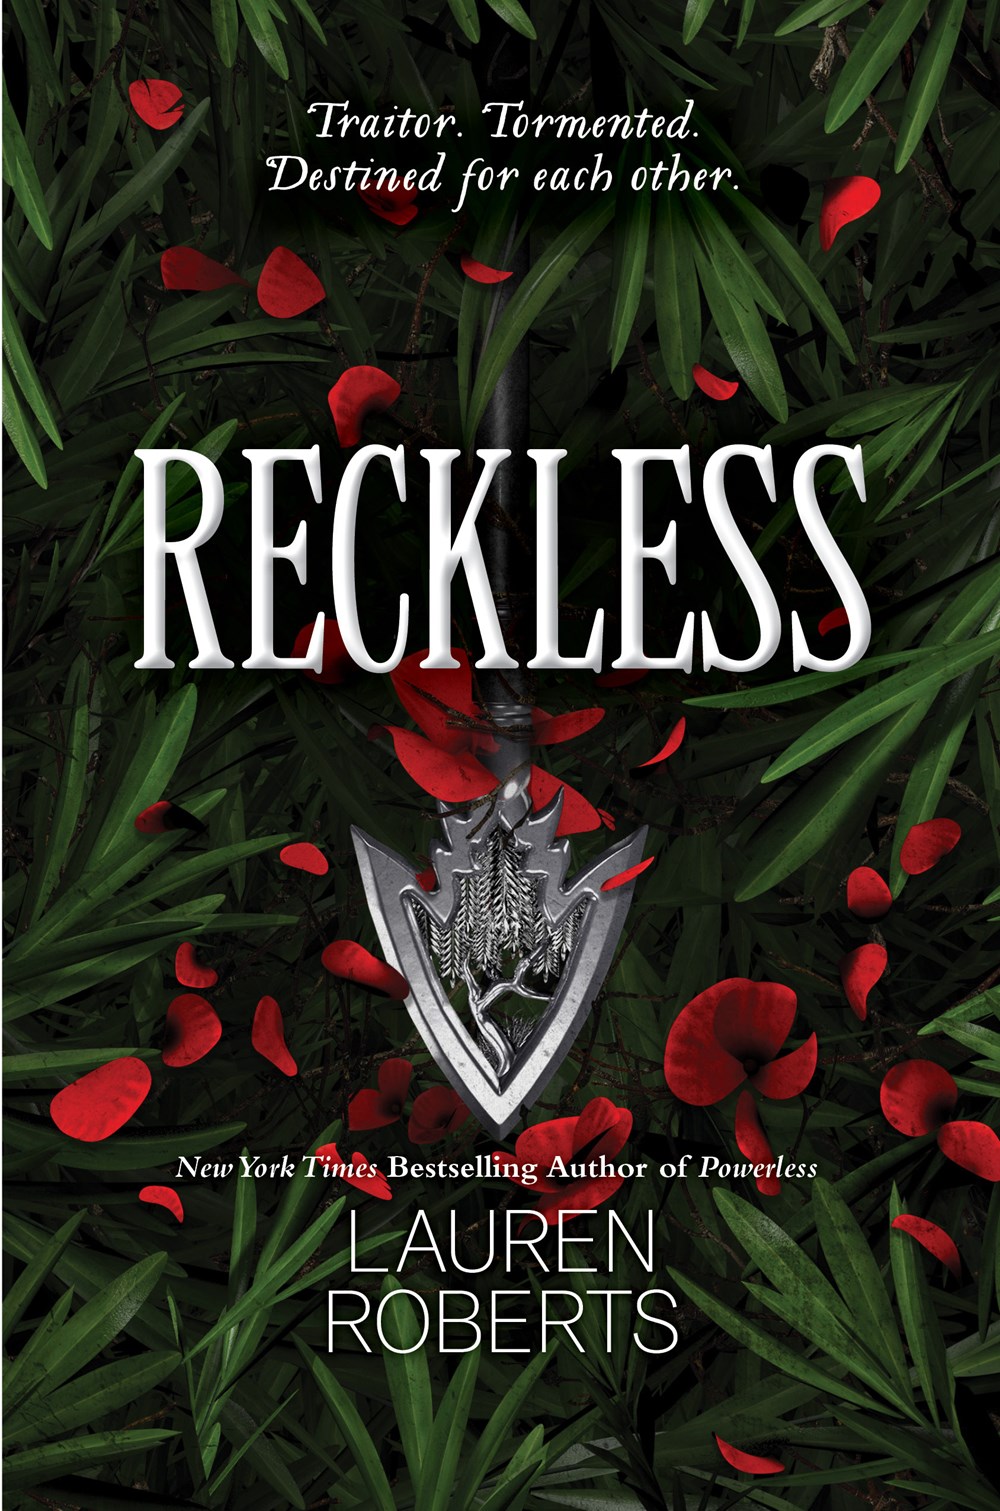 'Reckless' by Lauren Roberts